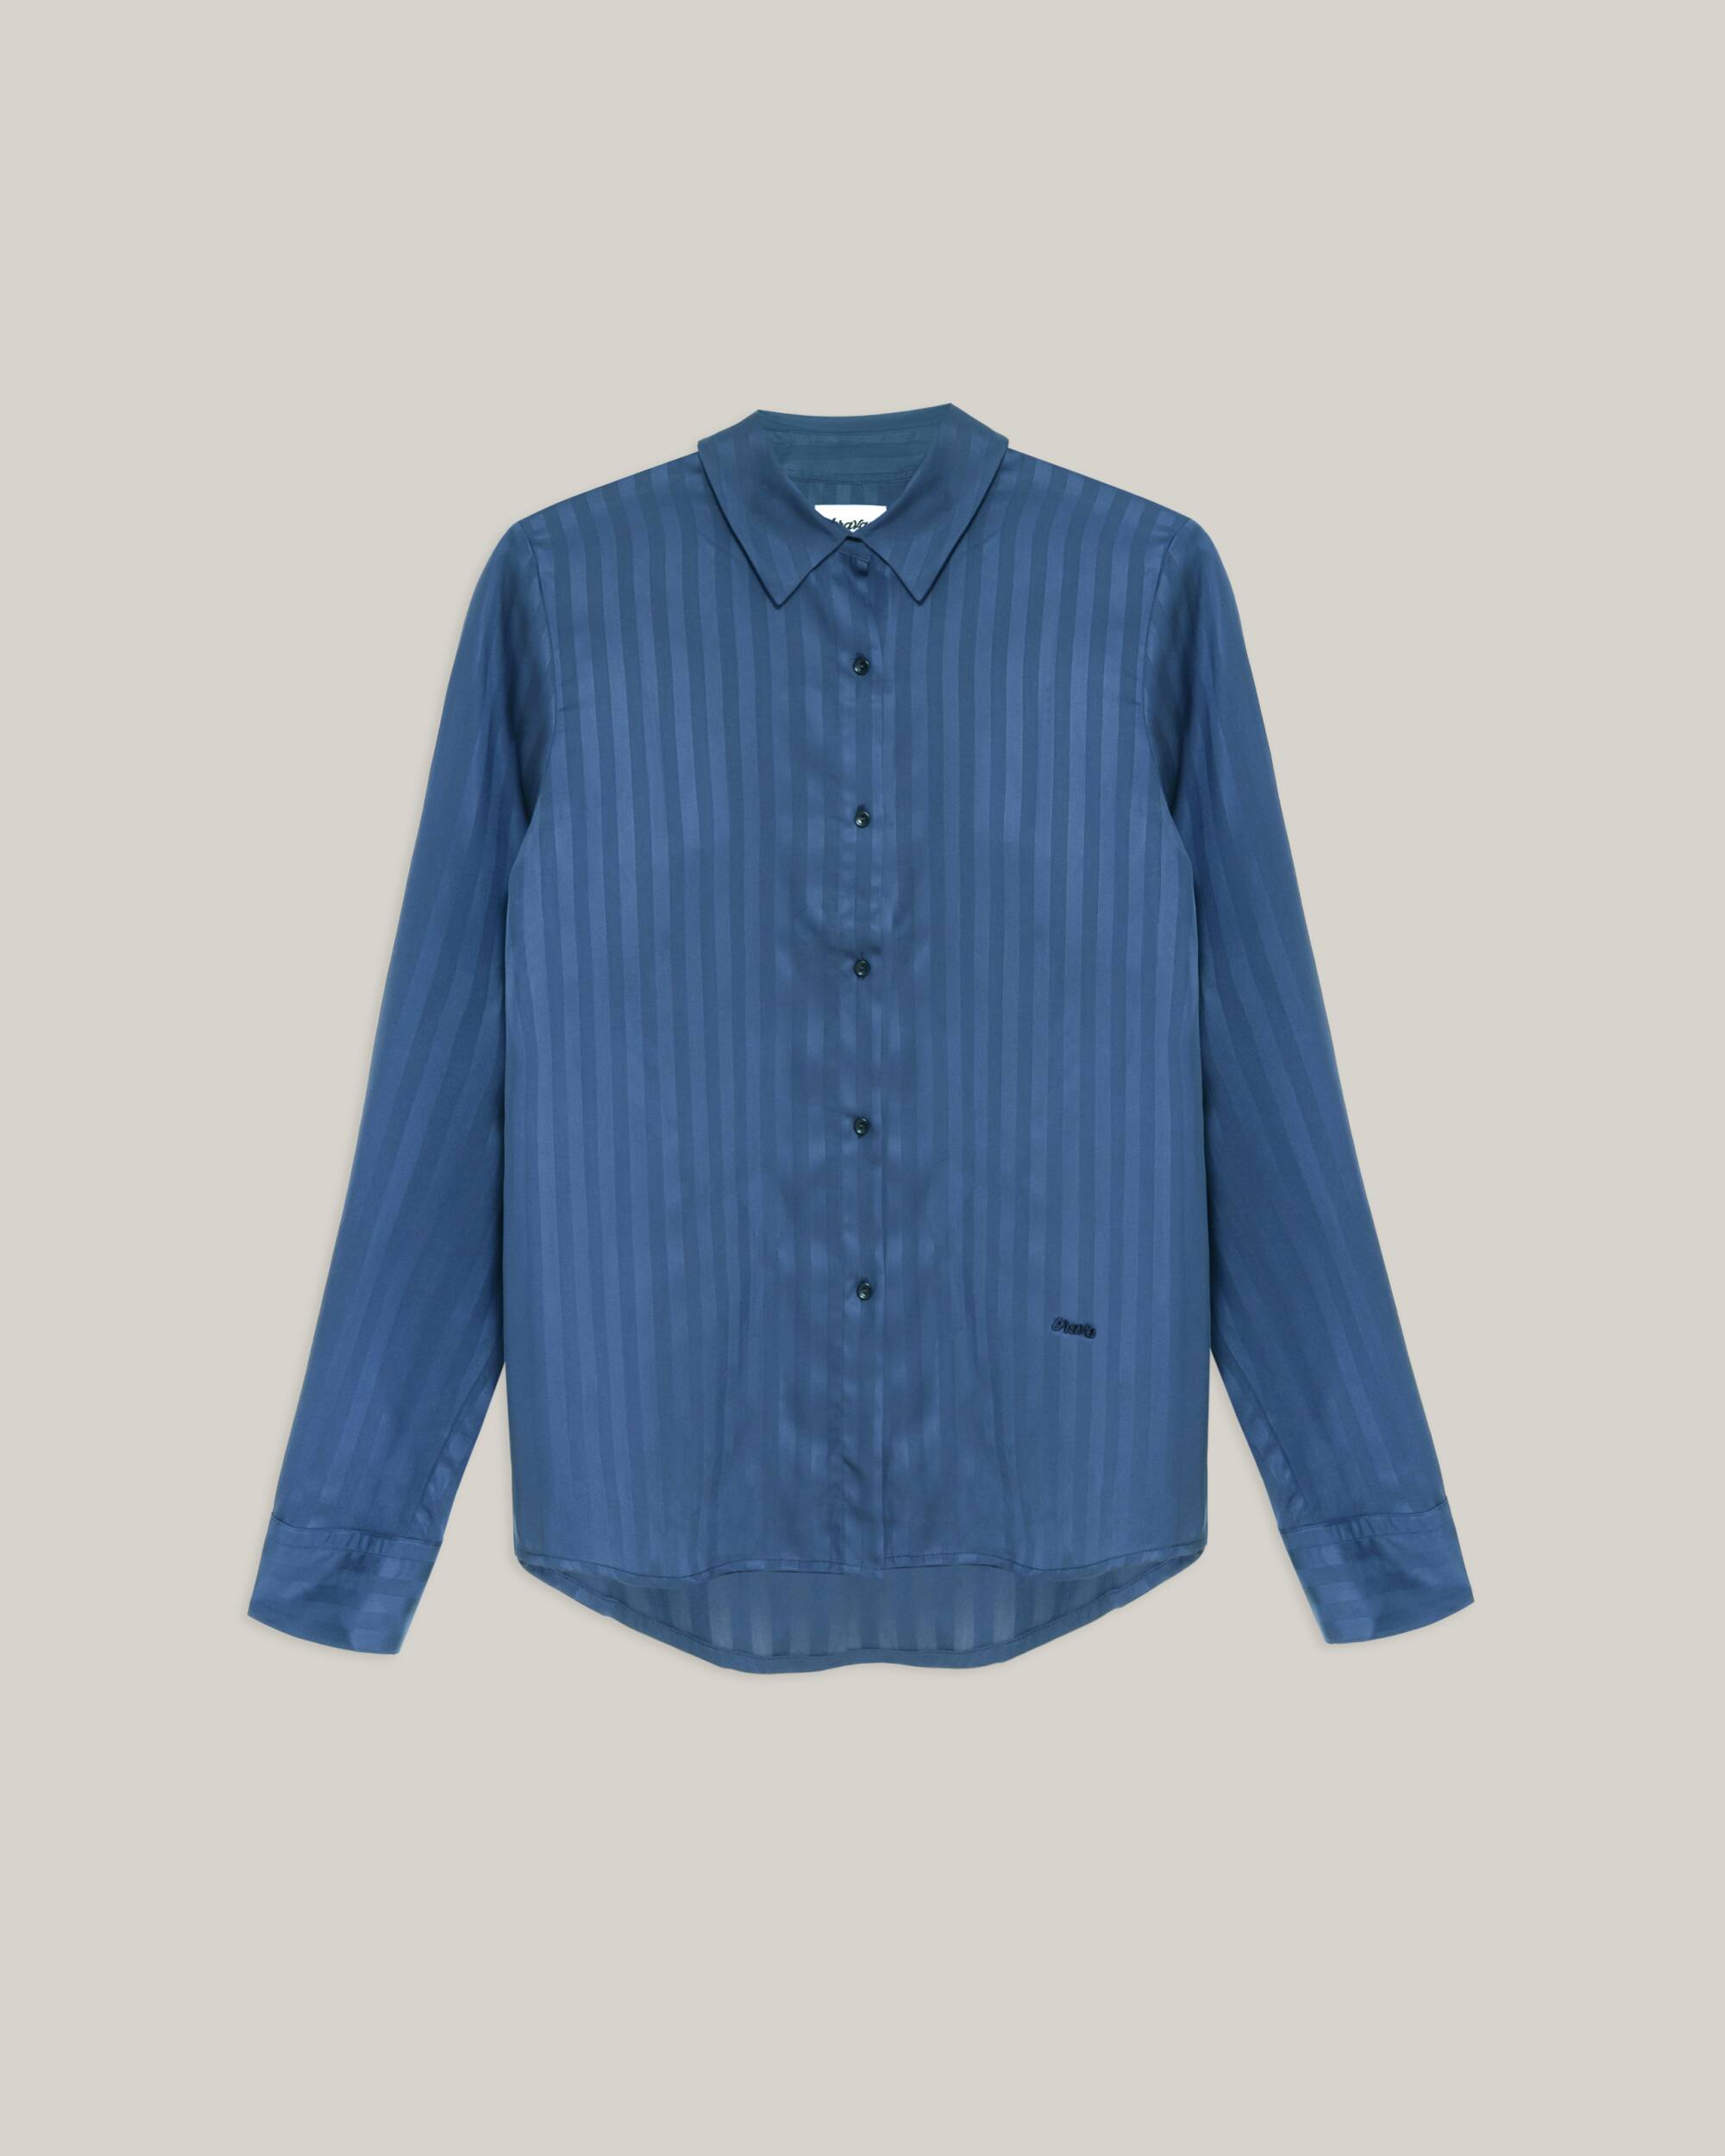 Bluse "Hidden Stripes" in Navy - blau aus 100% Tencel® / Lyocell® von Brava Fabrics